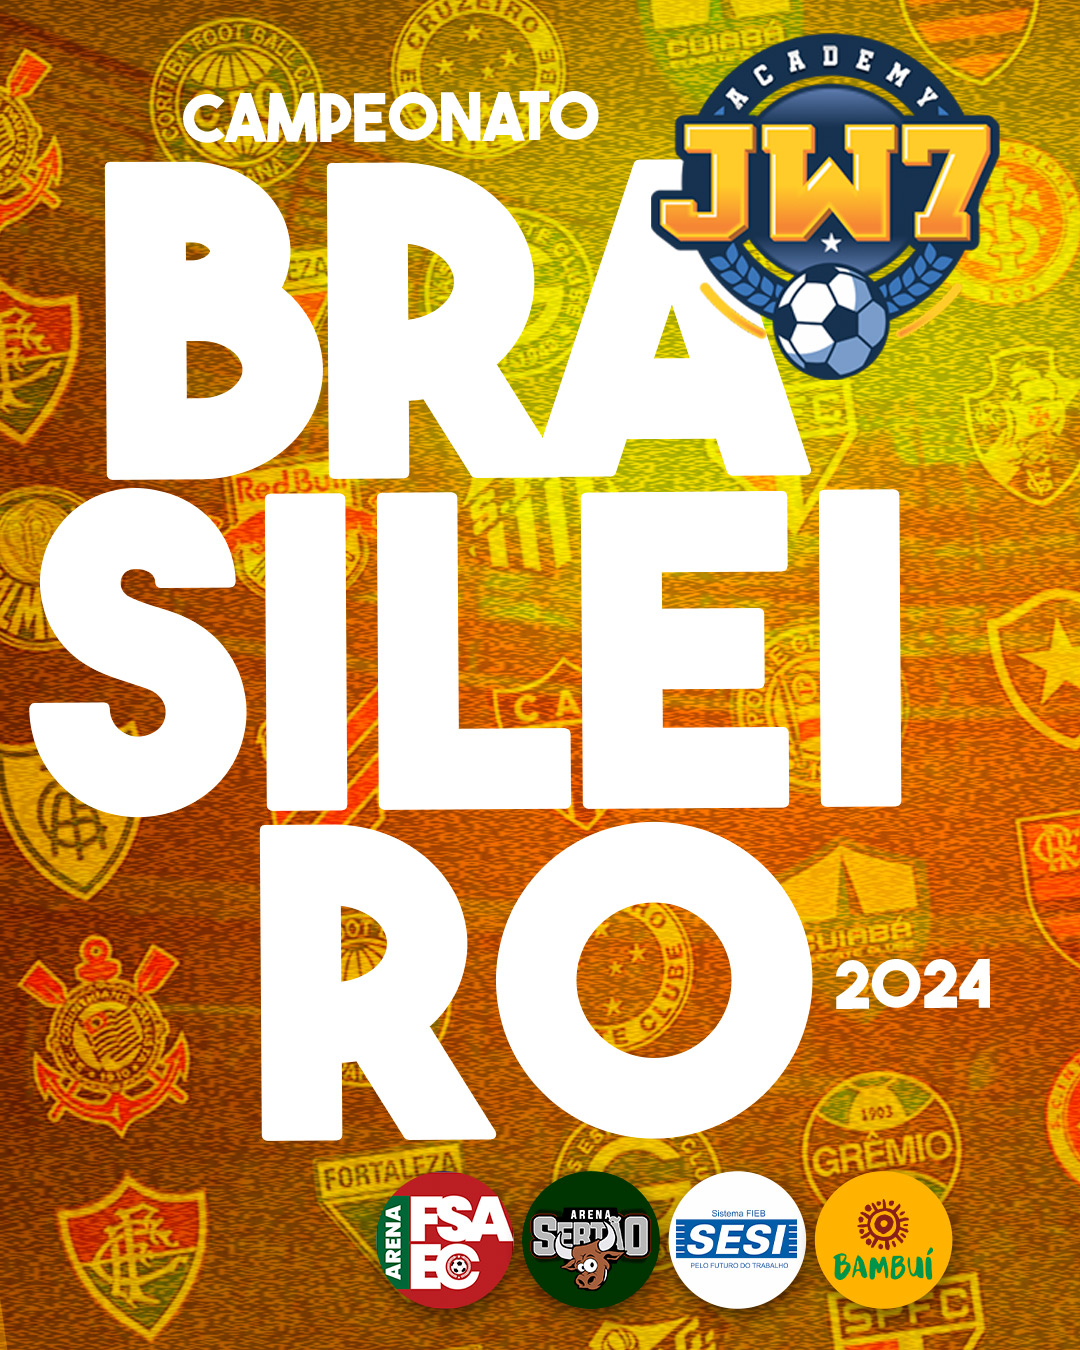 Capeonato-Brasileiro-jsb-2024-slides_01